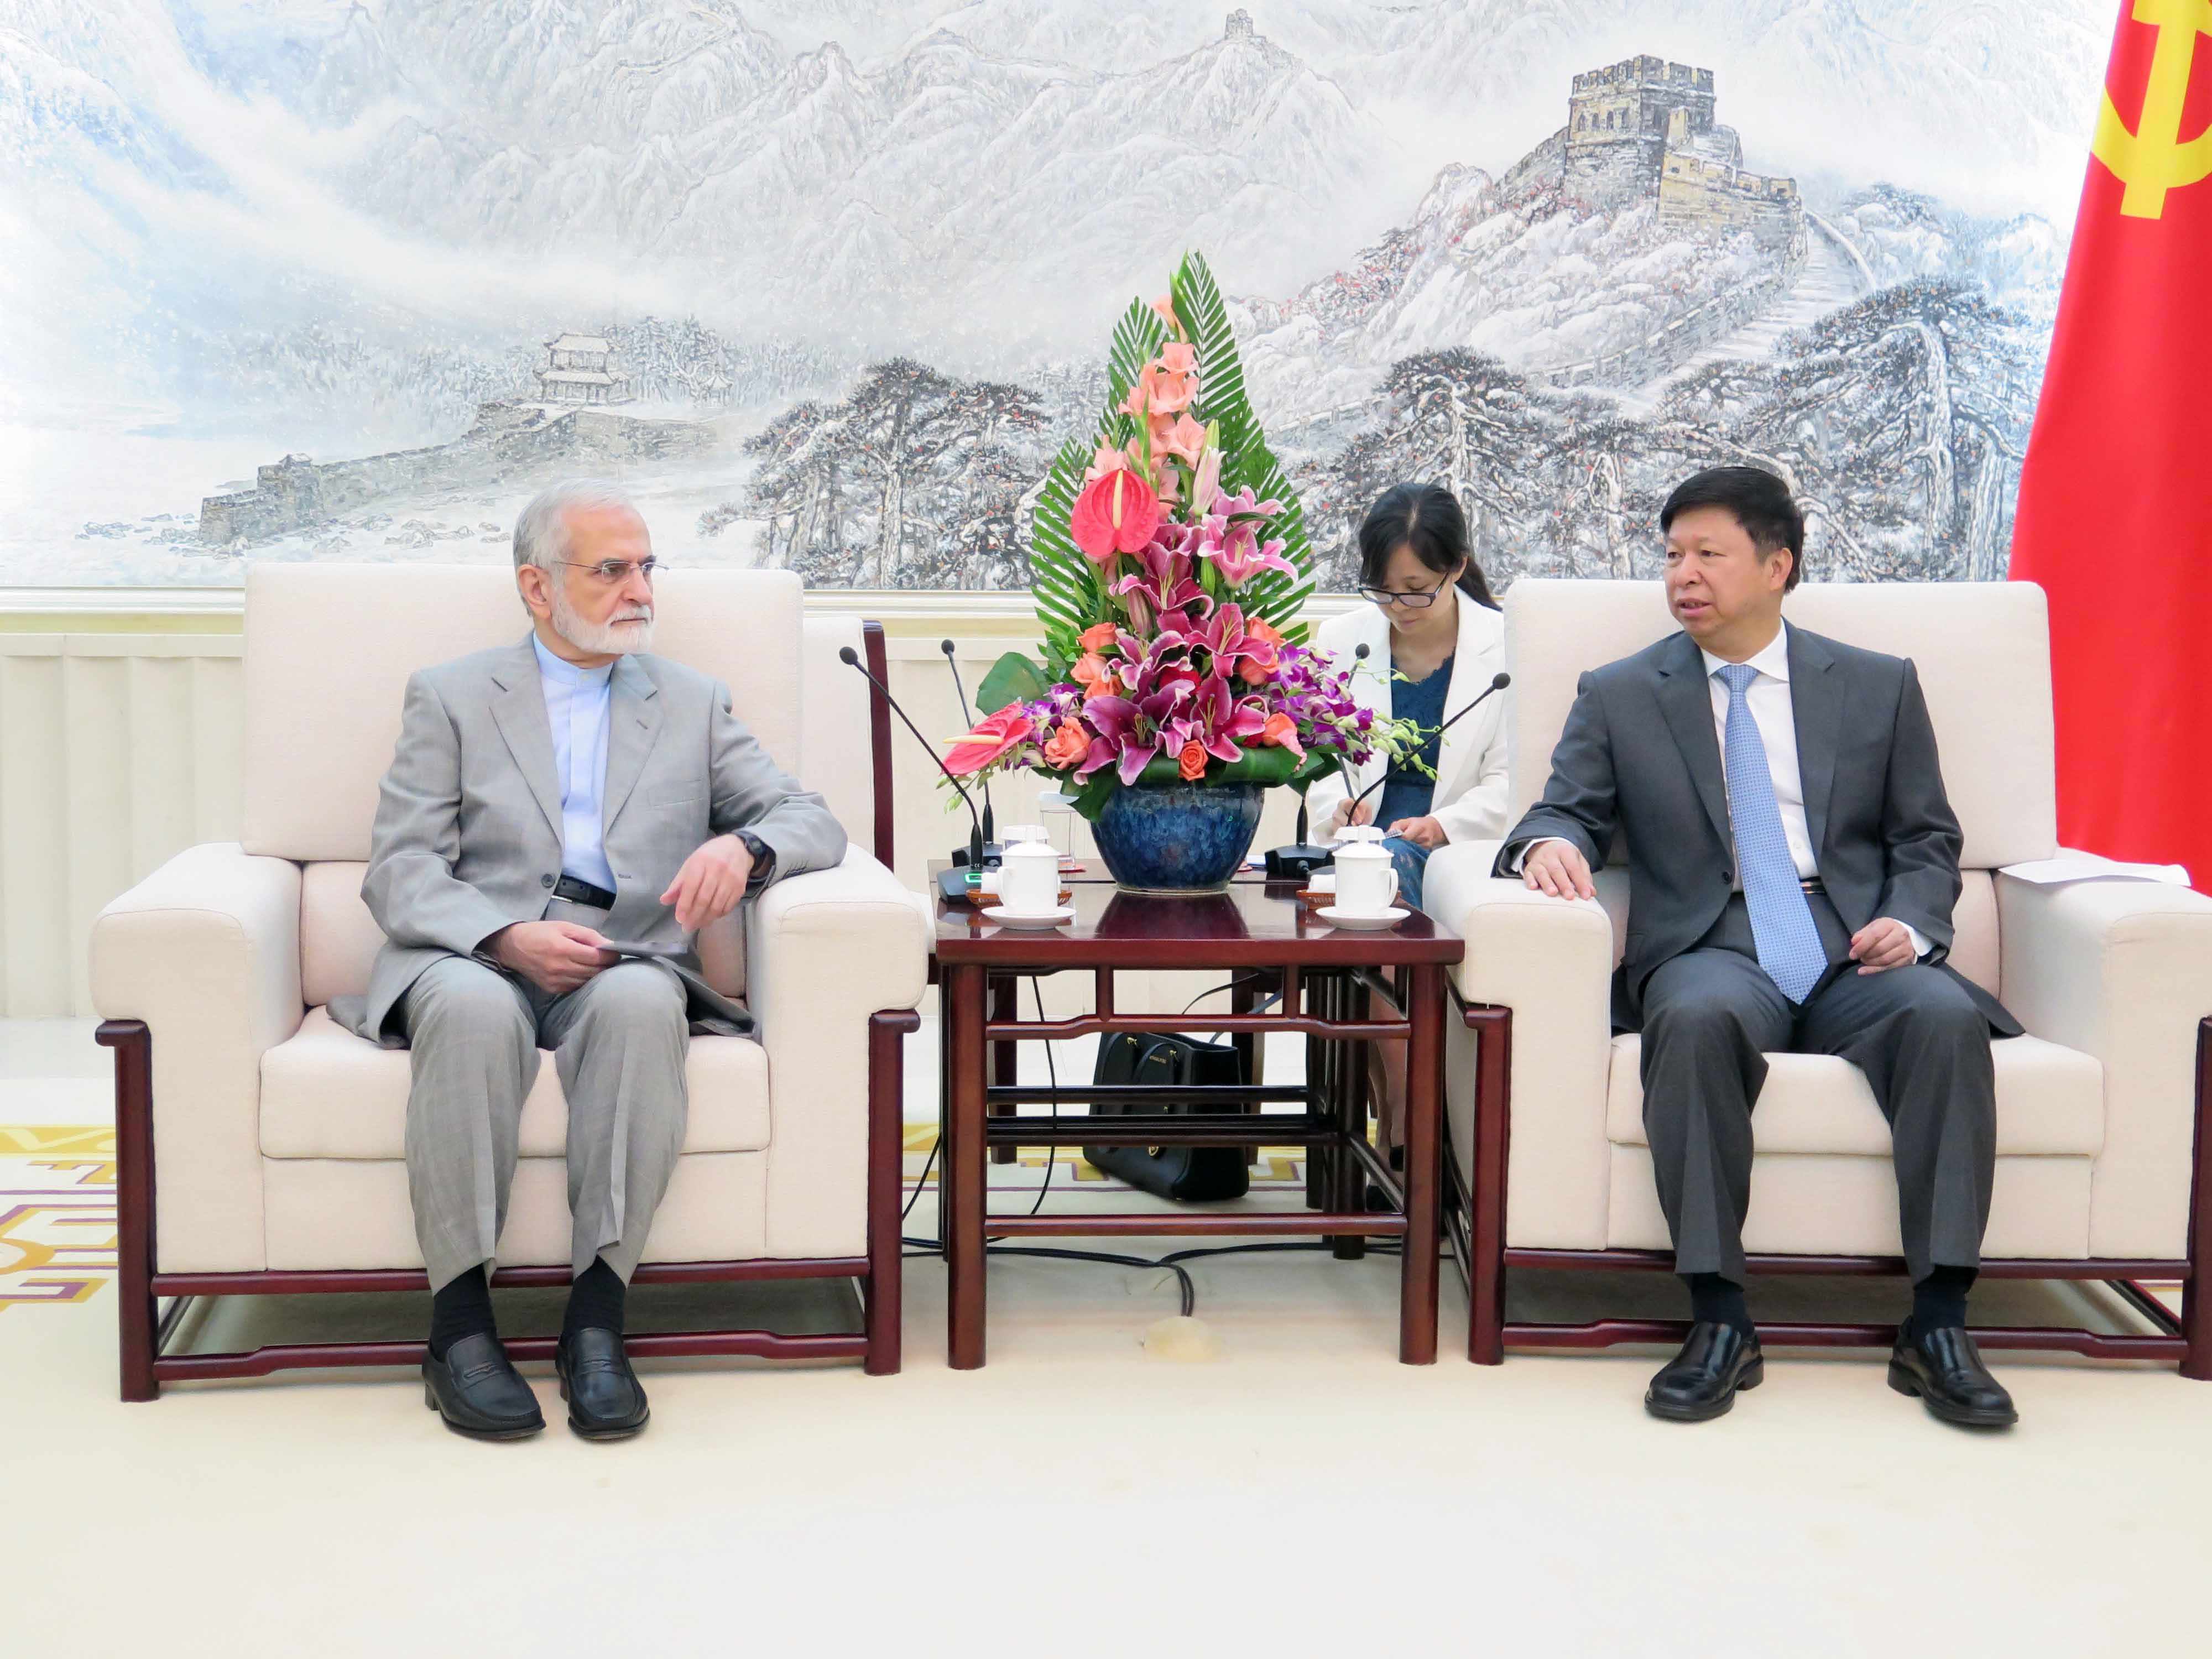 دیدار دکتر خرازی با وزیر بین الملل حزب کمونیست چین